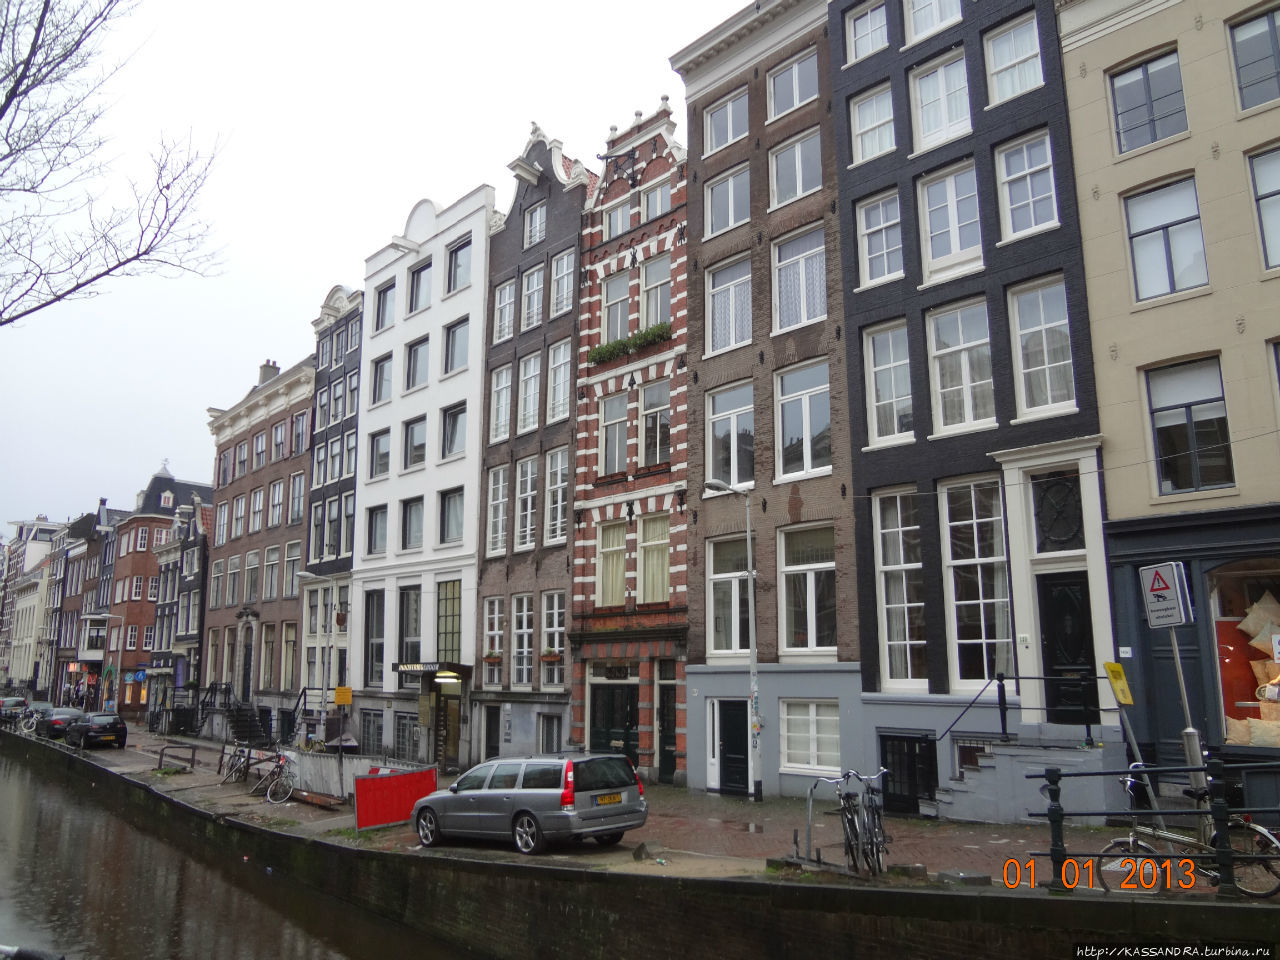 В Амстердаме всегда дождь Амстердам, Нидерланды